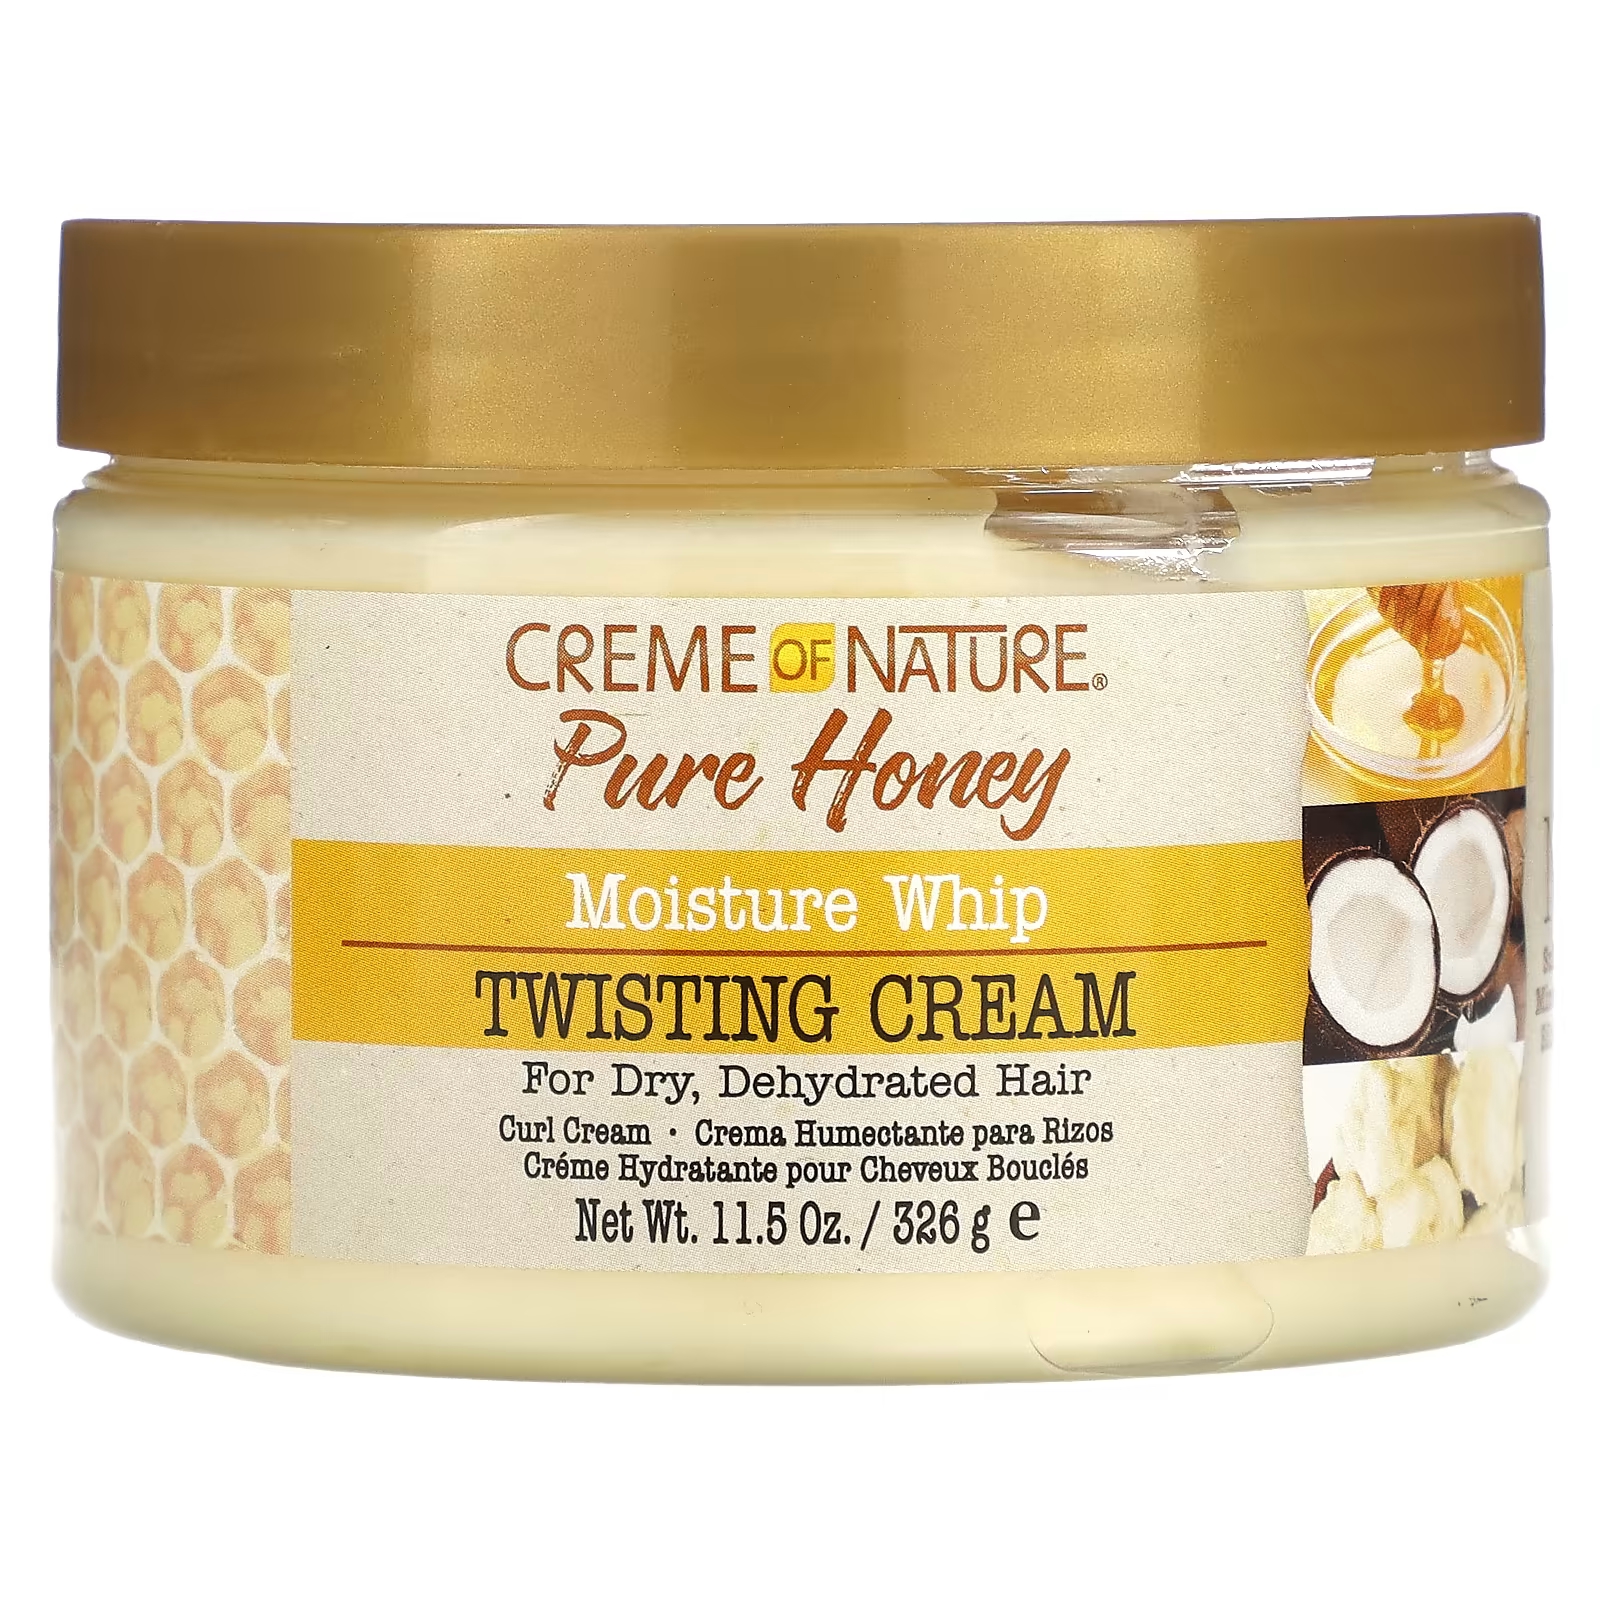 Pure Honey Moisture Крем для кнута для скручивания, 11,5 унций (326 г) Creme Of Nature мусс для завивки волос creme of nature pure honey moisture